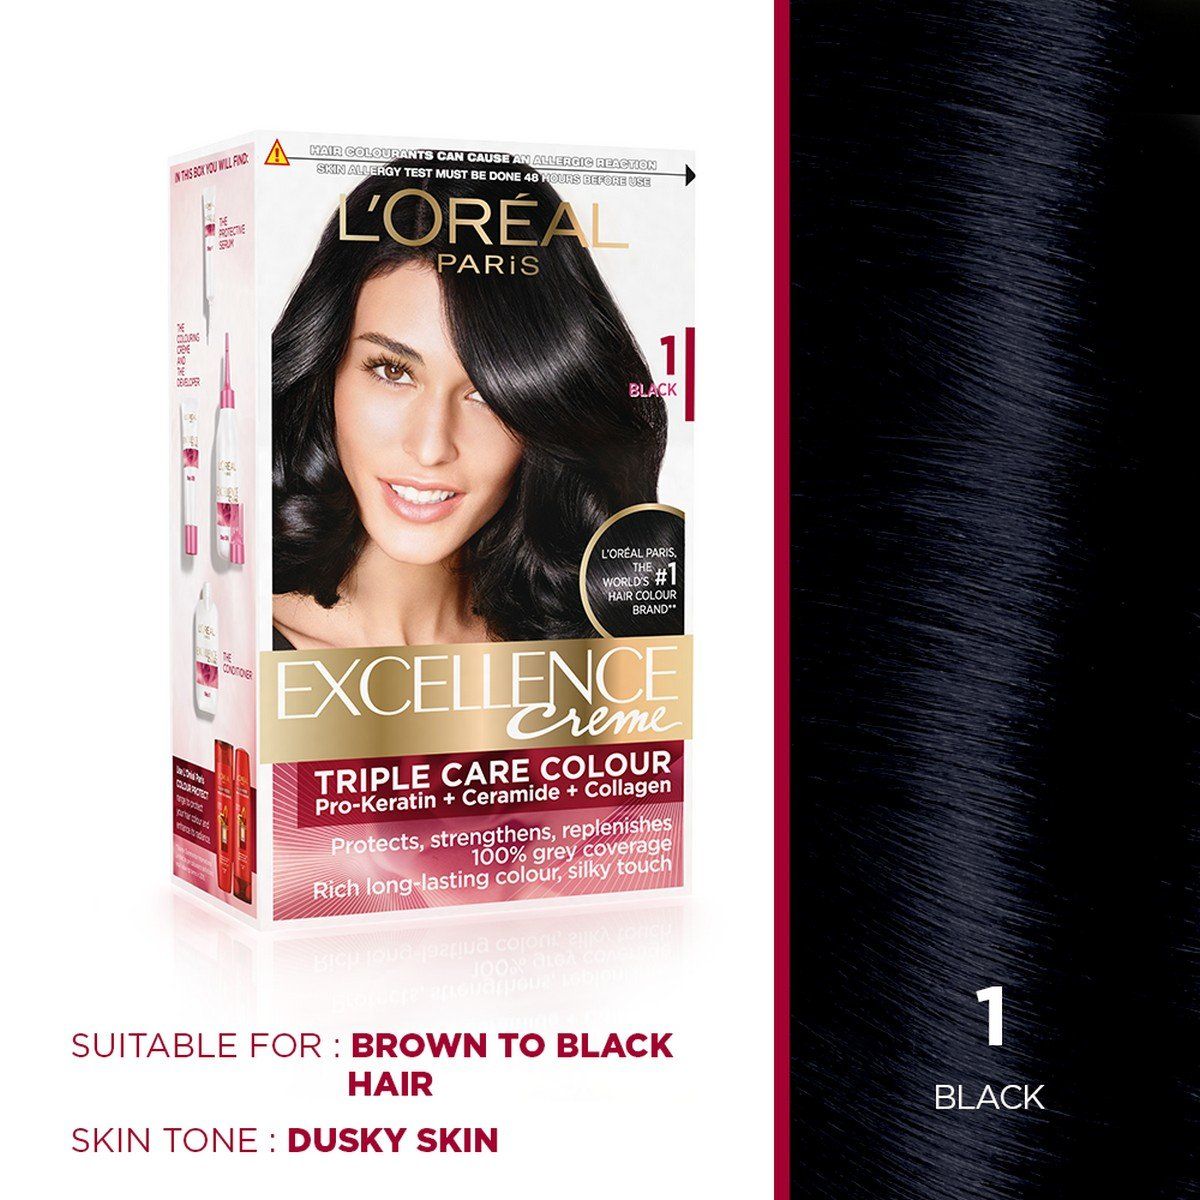 L'Oreal Paris Excellence Creme Hair Color-1 Black - Niram